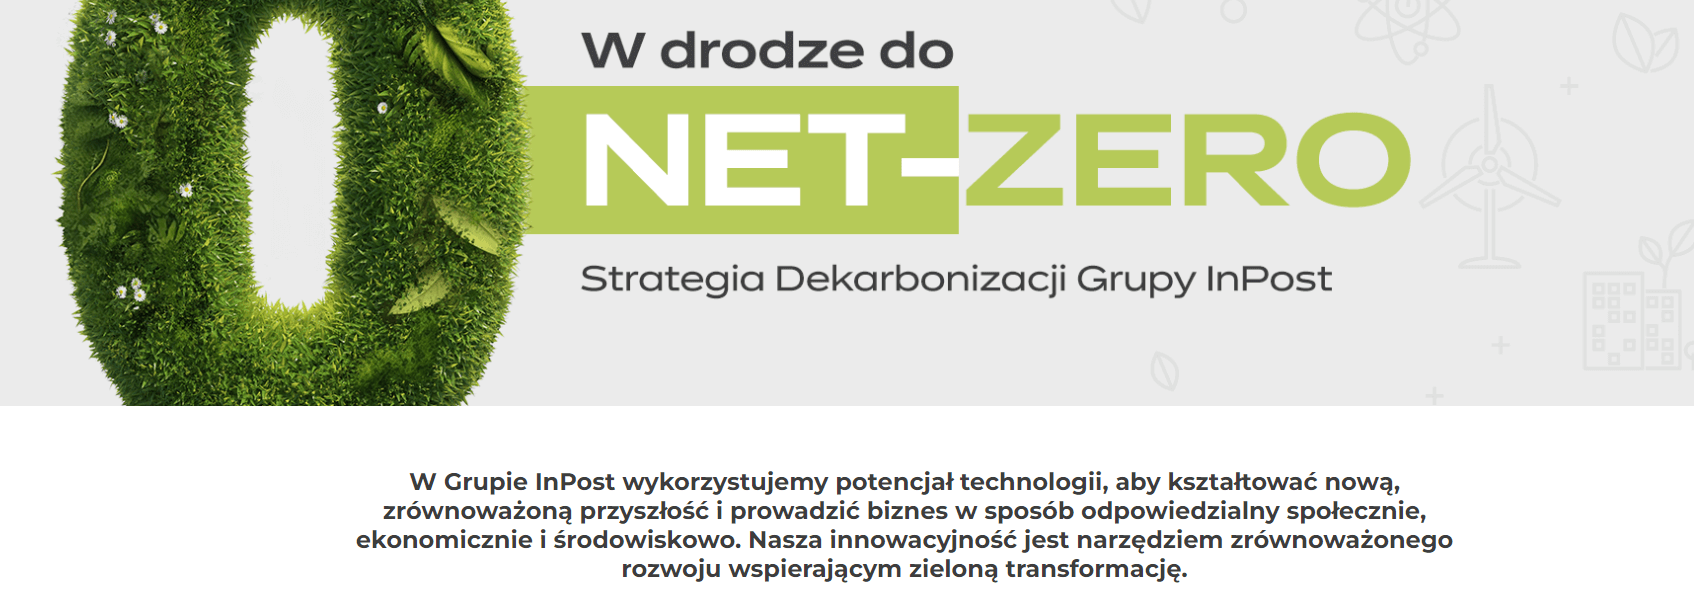 InPost - W drodze do NET-ZERO, Strategia Dekarbonizacji Grupy InPost